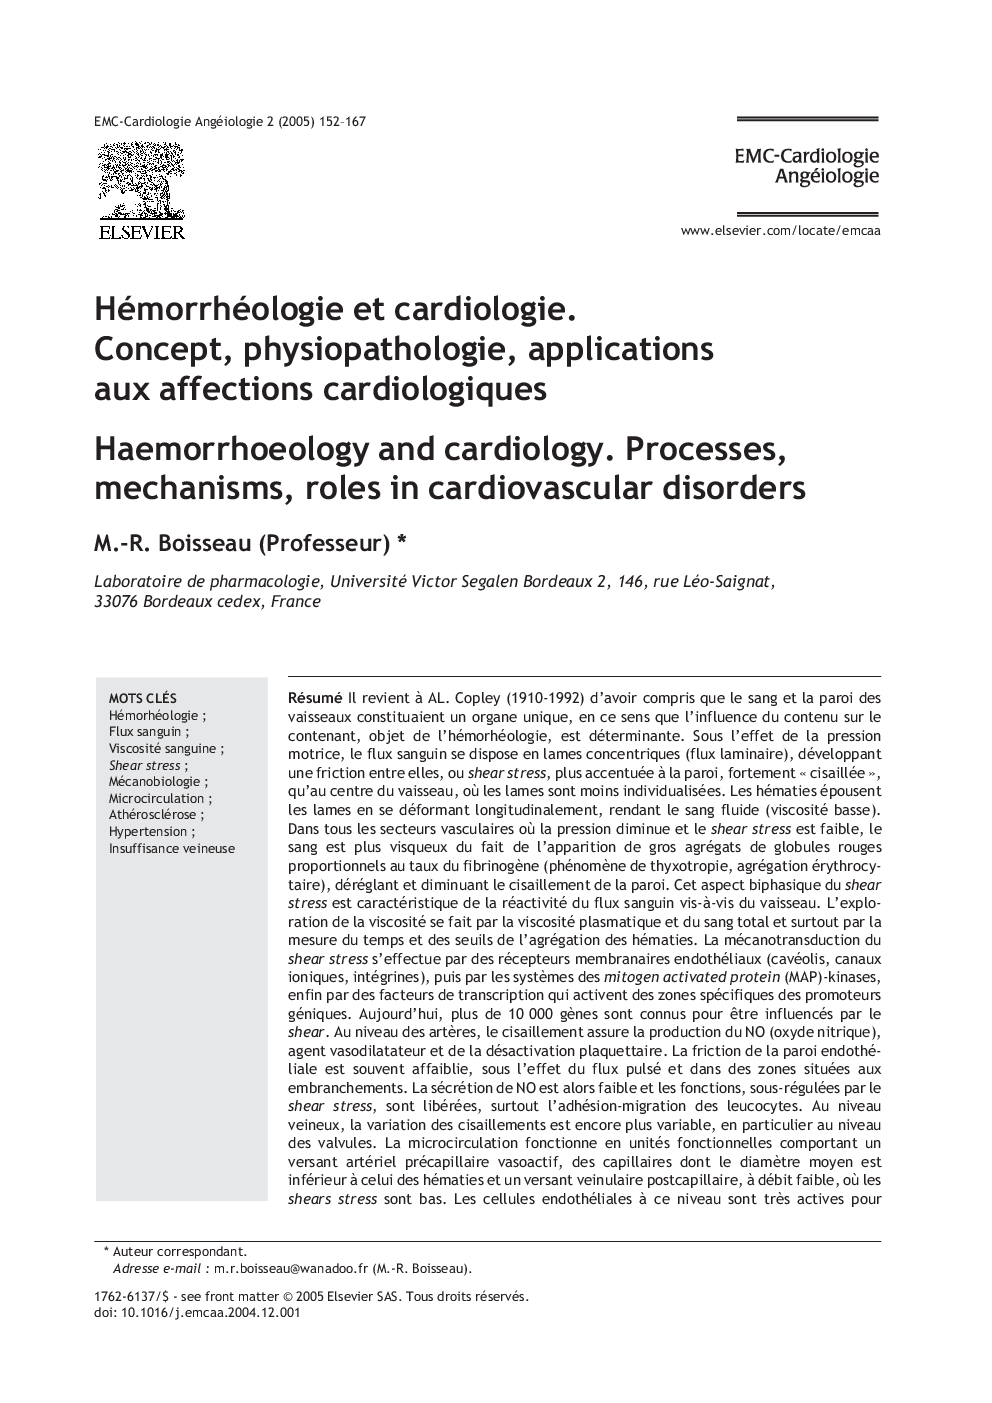 Hémorrhéologie et cardiologie. Concept, physiopathologie, applications aux affections cardiologiques